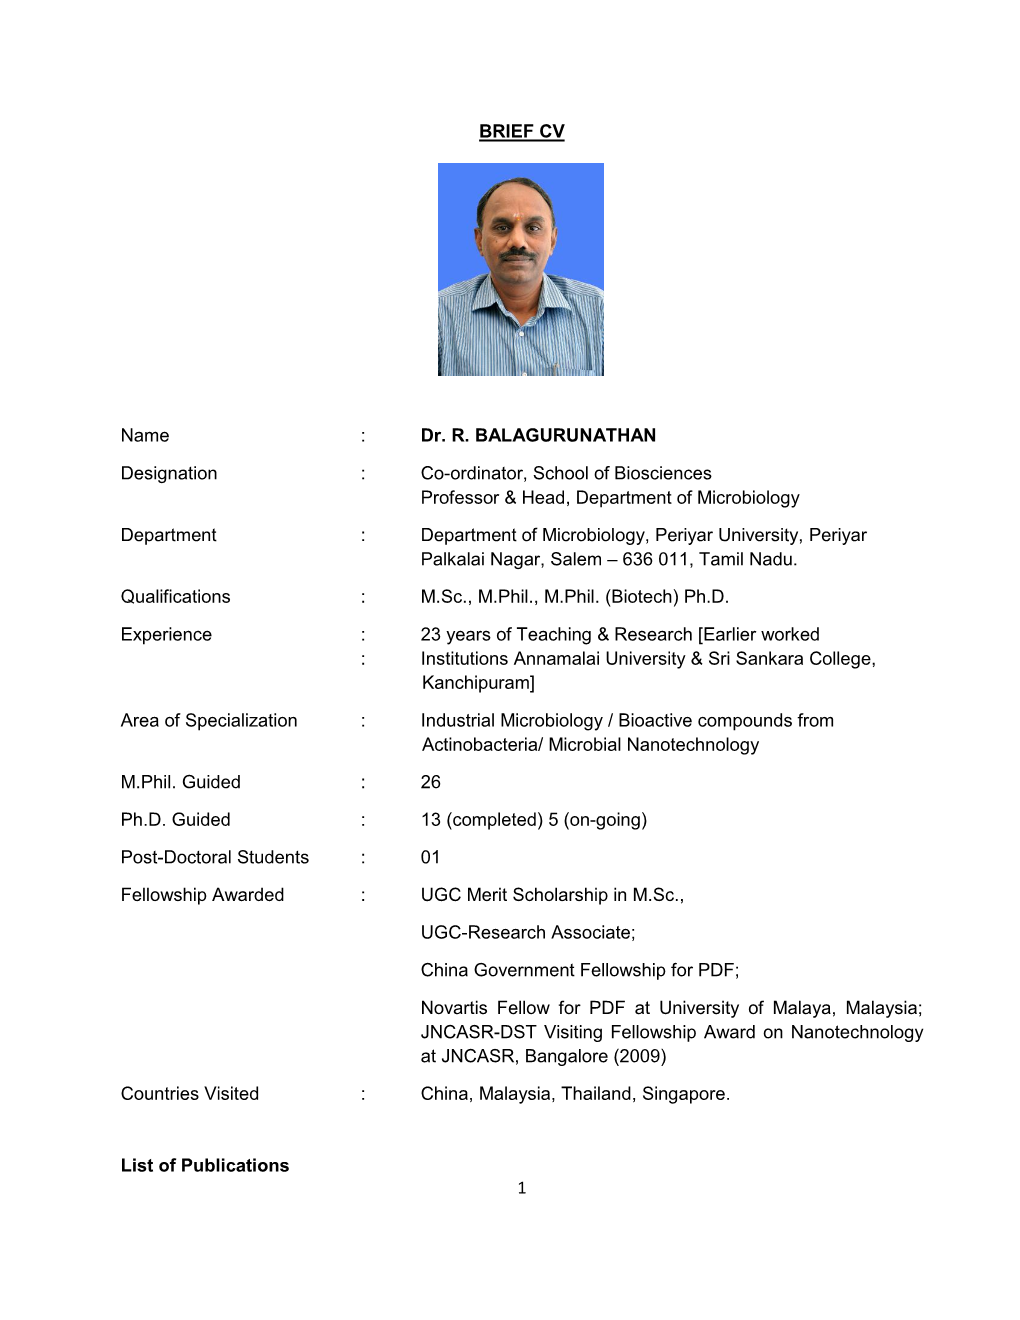 1 BRIEF CV Name : Dr. R. BALAGURUNATHAN Designation